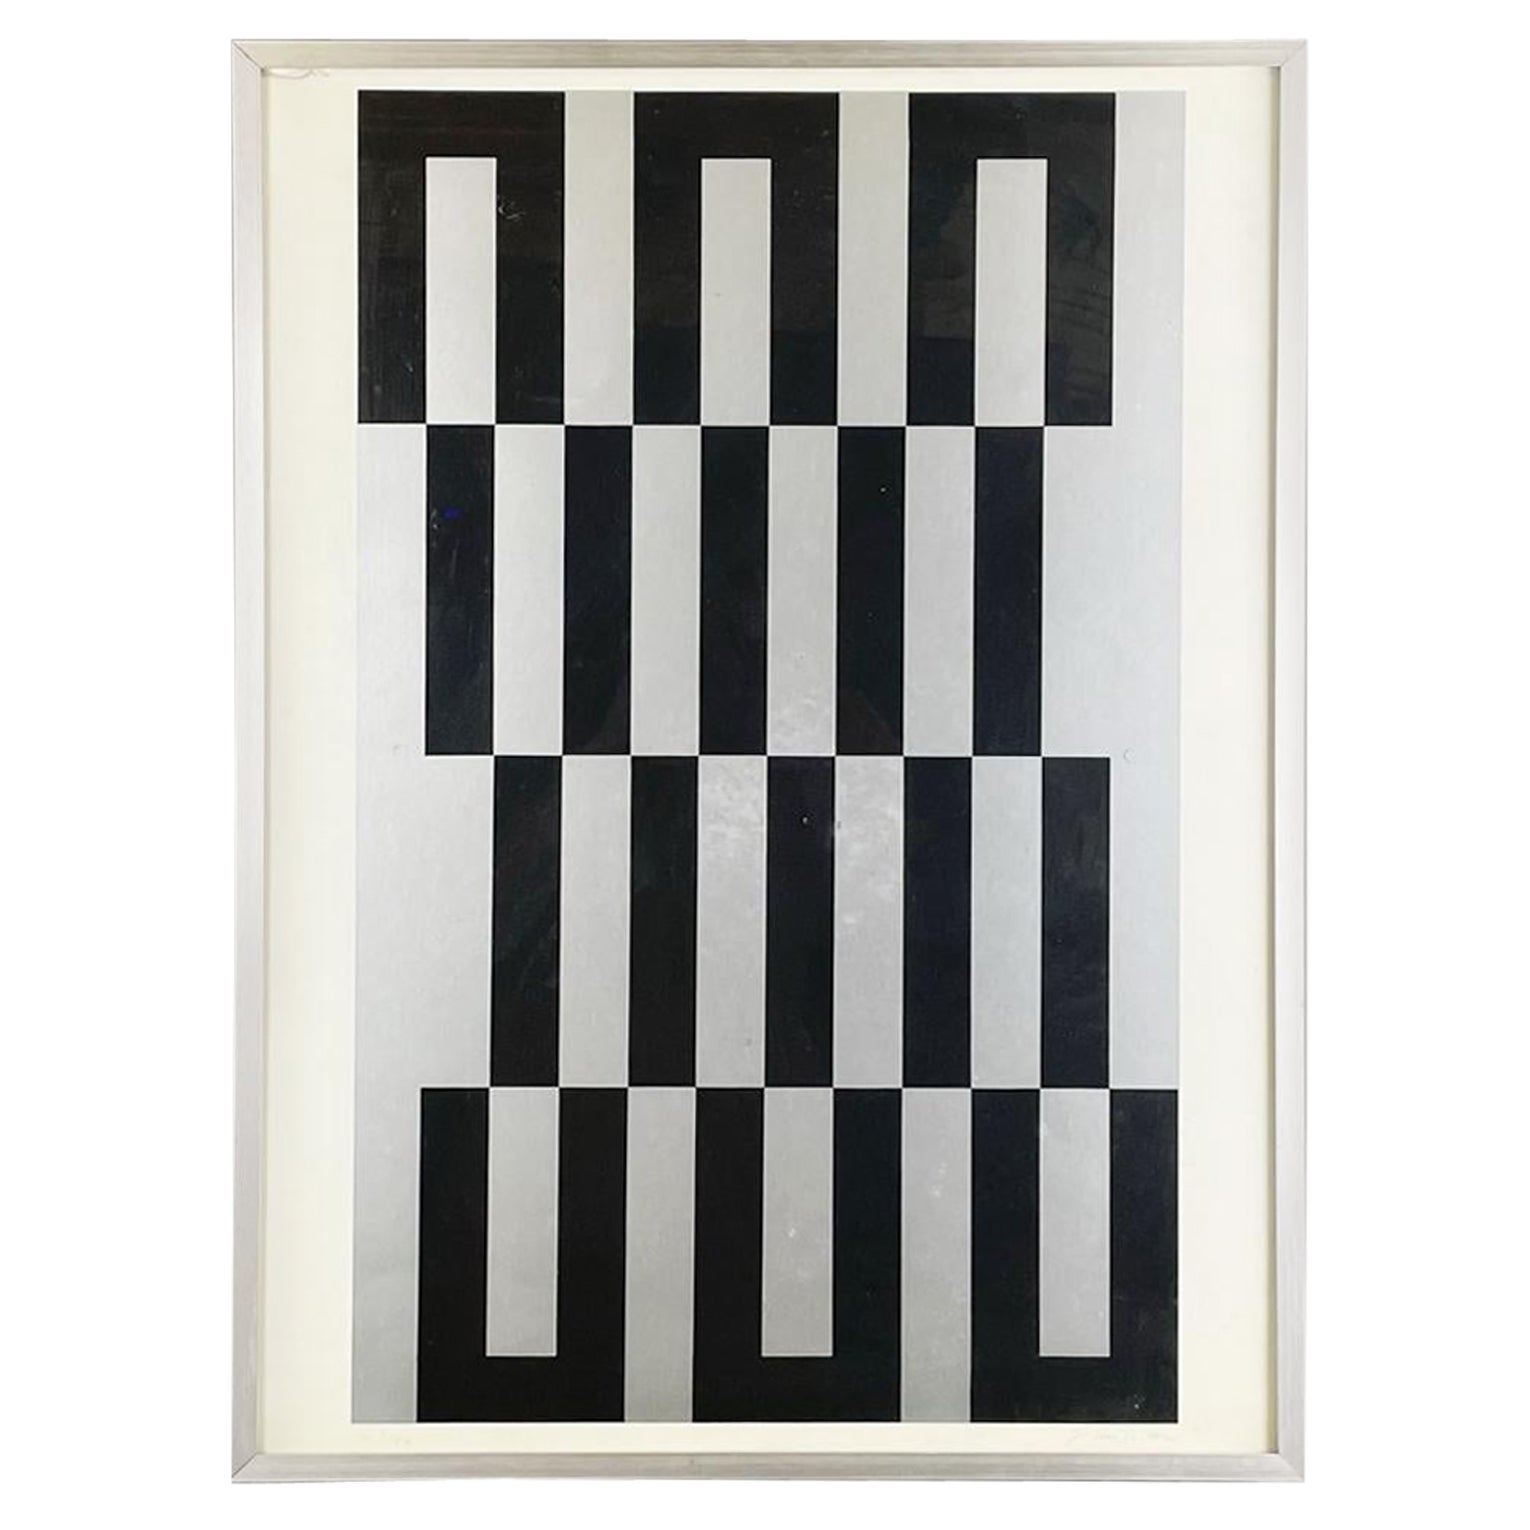 Französische Moderne Grauer schwarzer weißer Siebdruck von Julije Knifer, 1970er Jahre